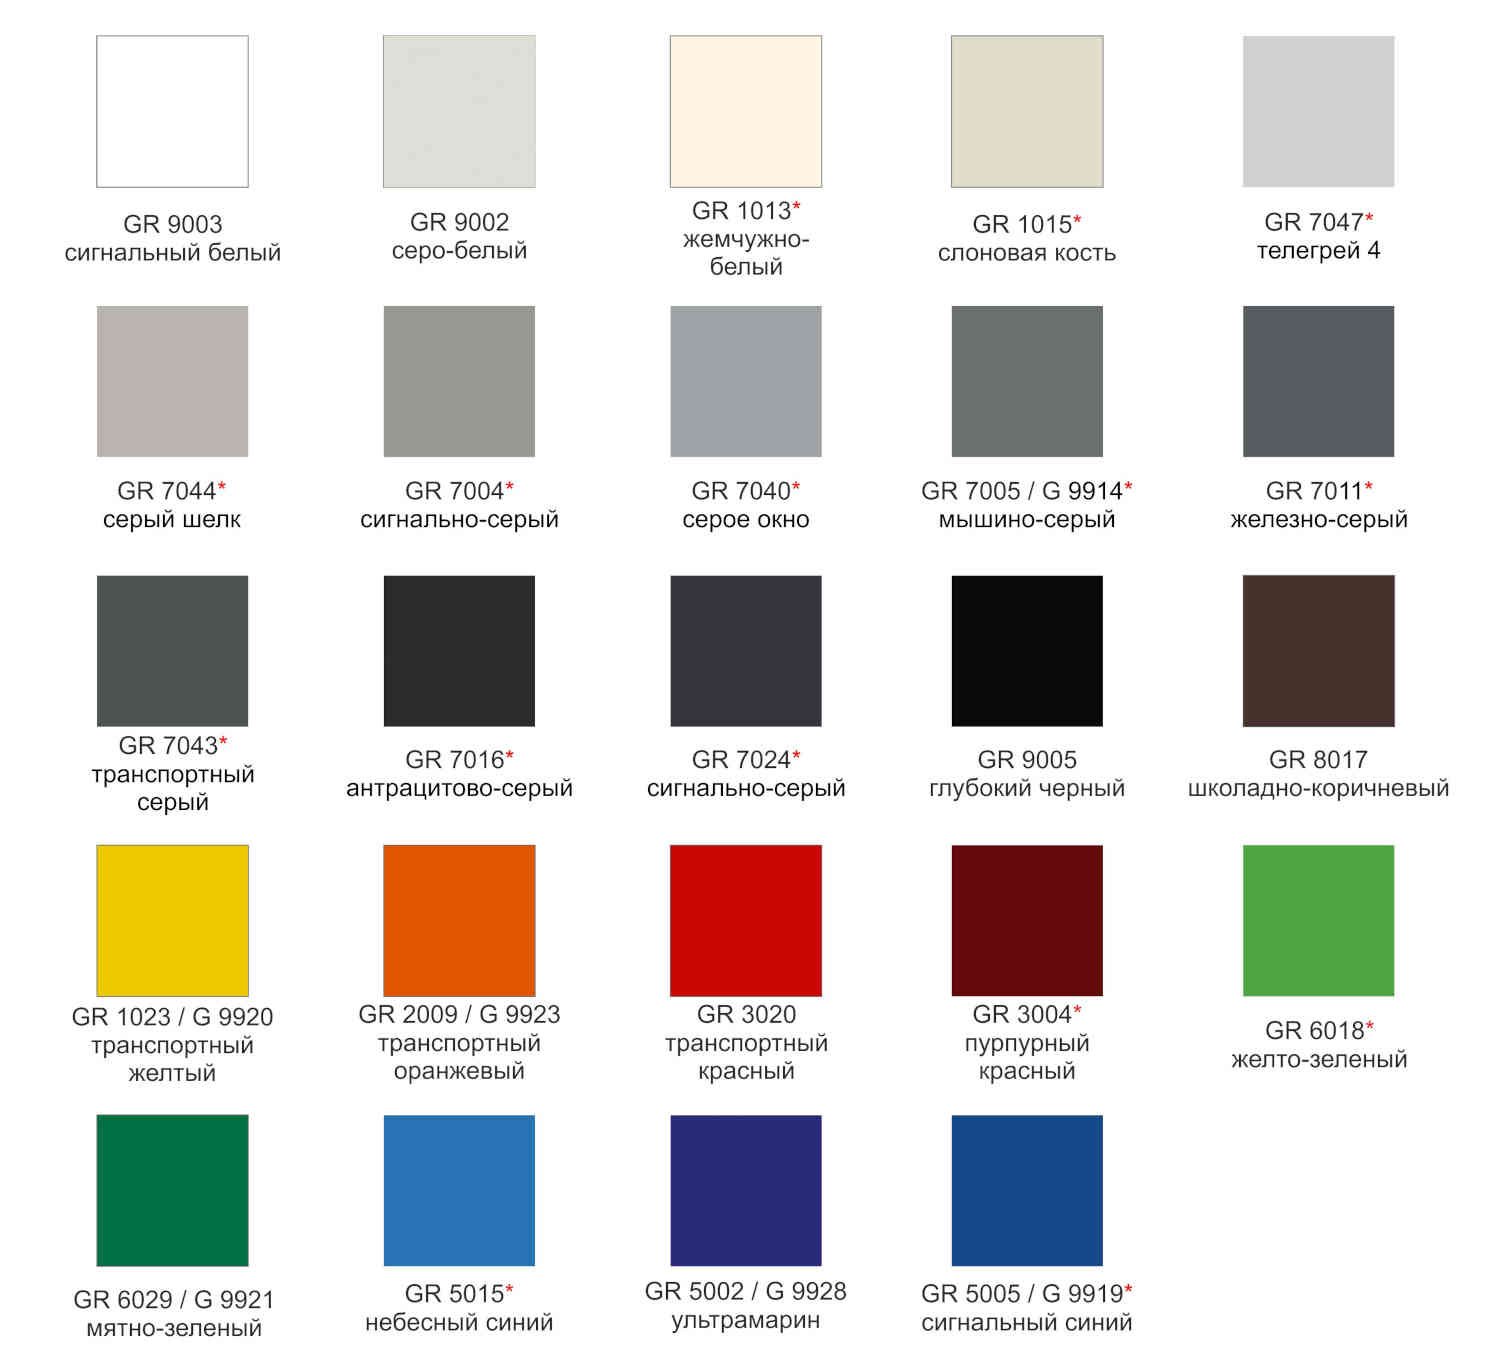 Каталог цветов для алюминиевых композитных панелей Grossbond 